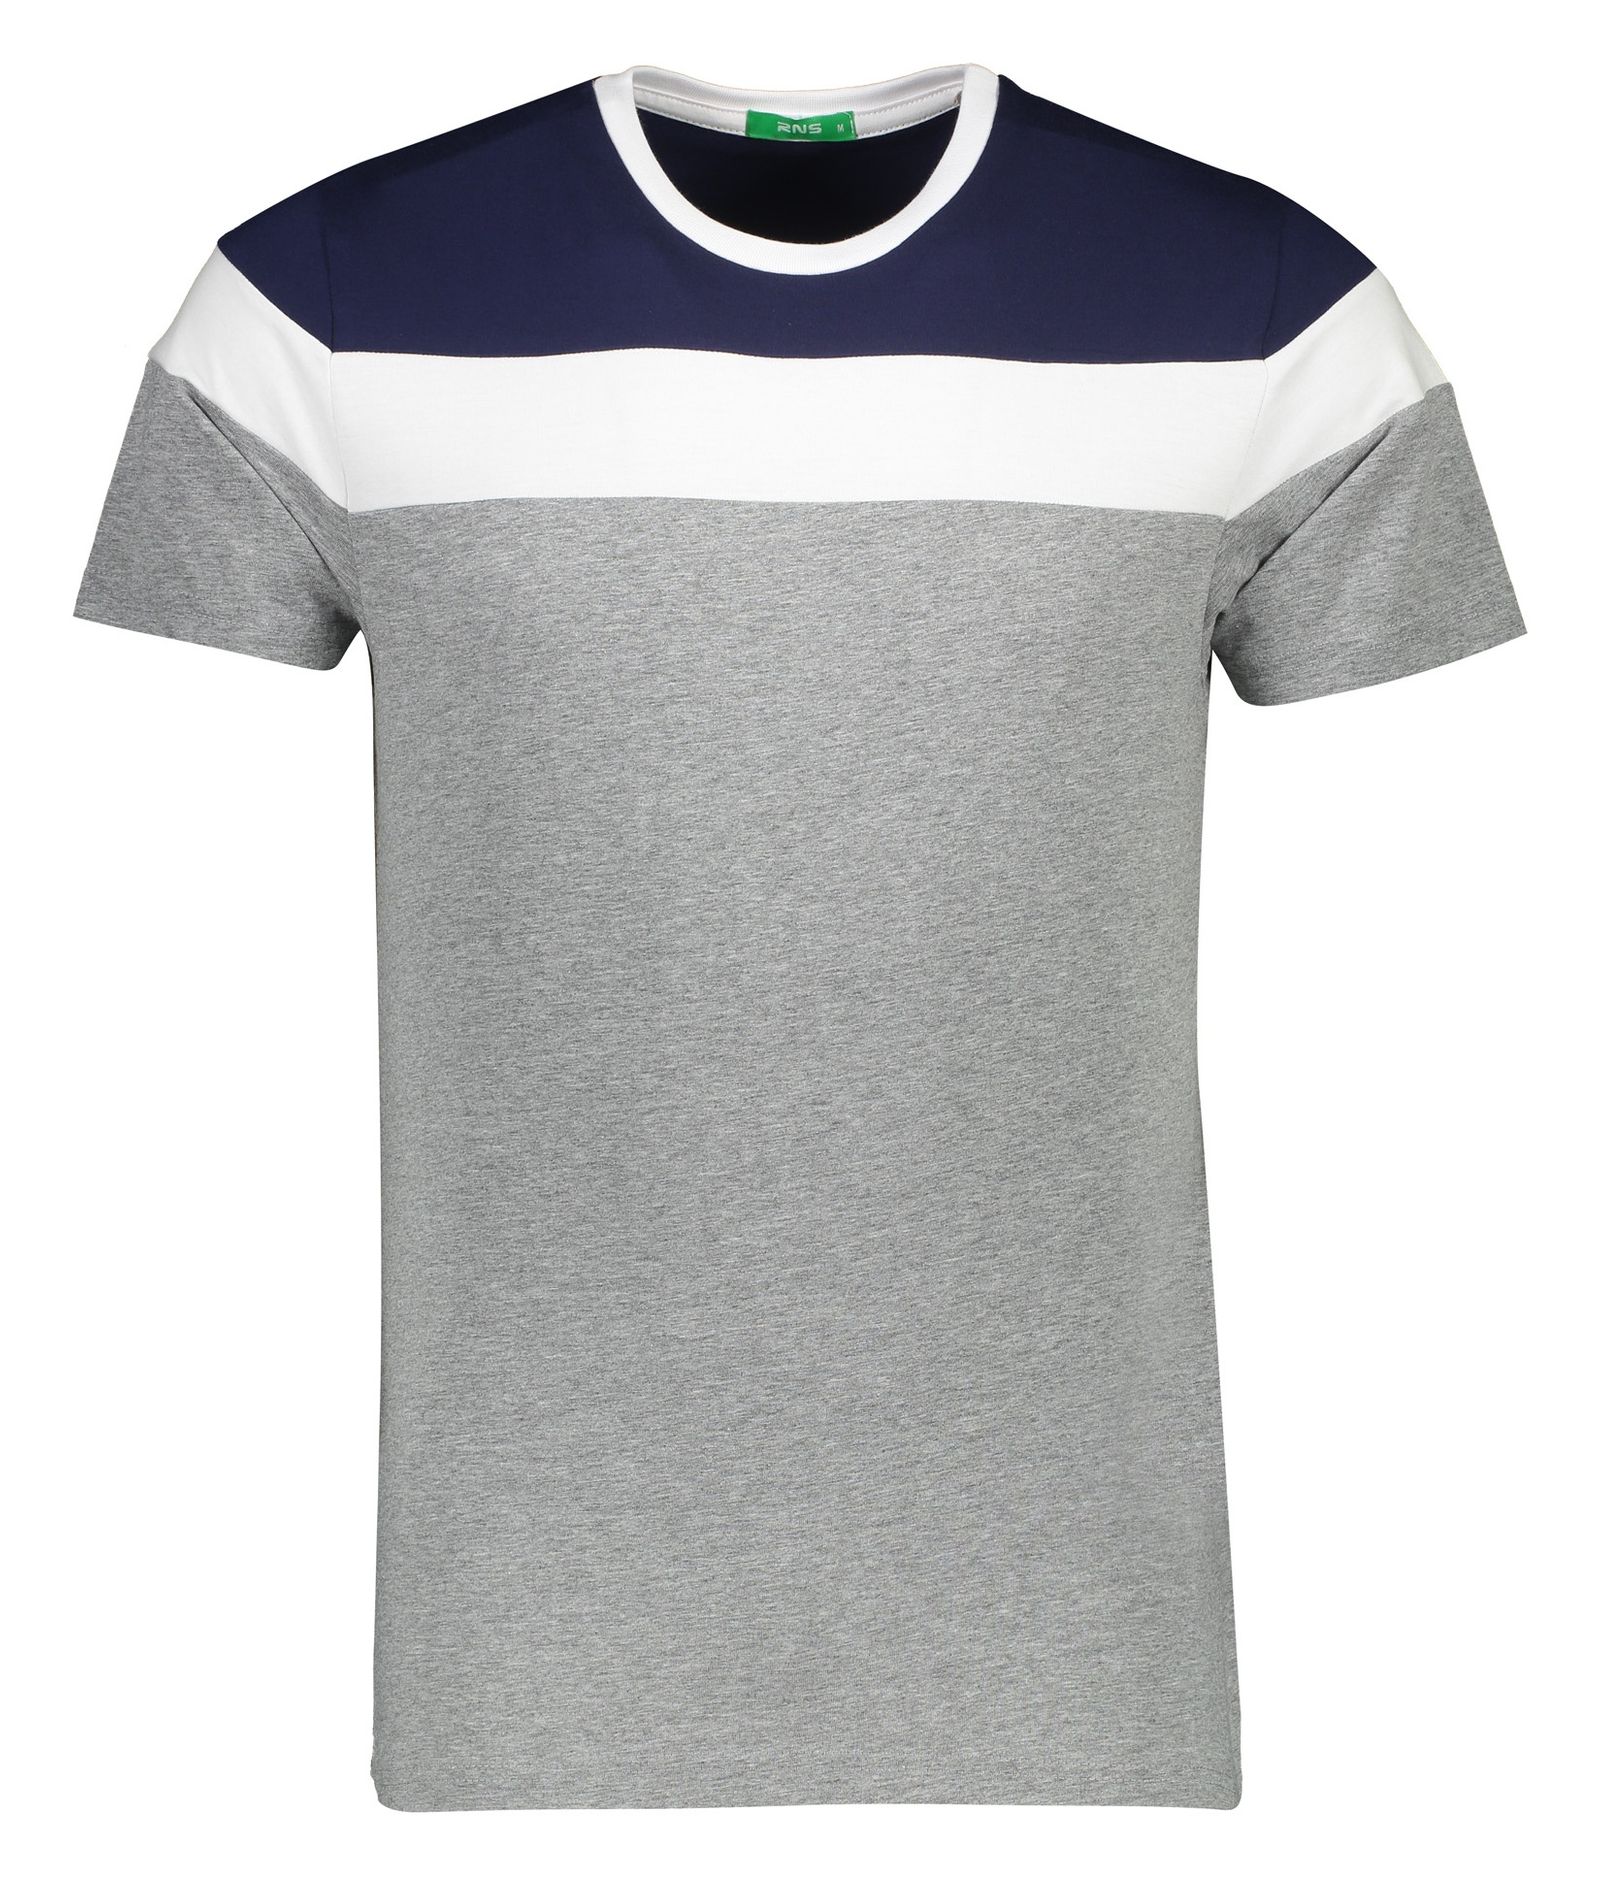 تی شرت مردانه آر ان اس مدل 1131107-59 -  - 2